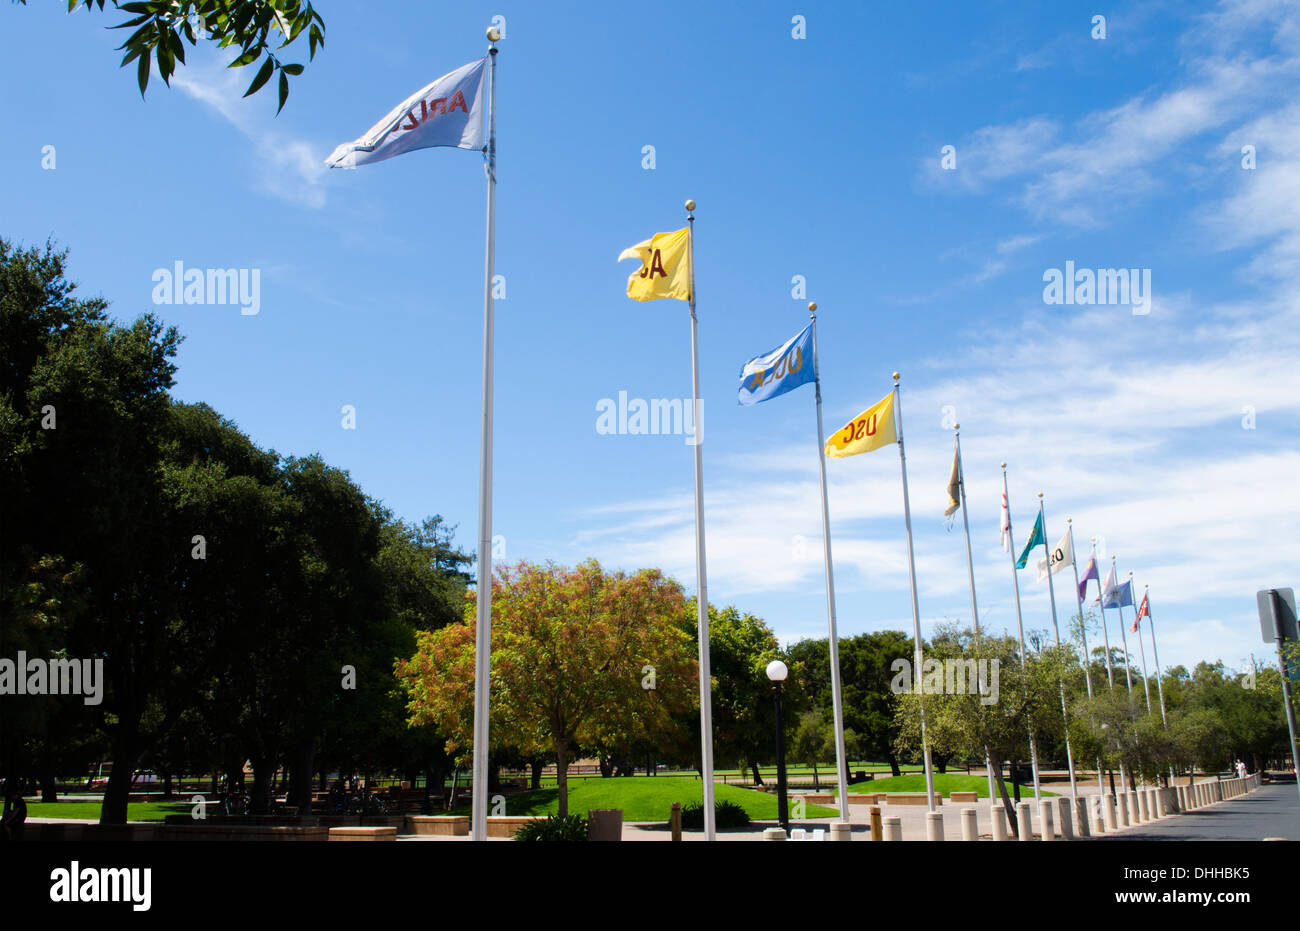 L'Università di Stanford in California tutte le bandiere della PAC 12 scuole Foto Stock